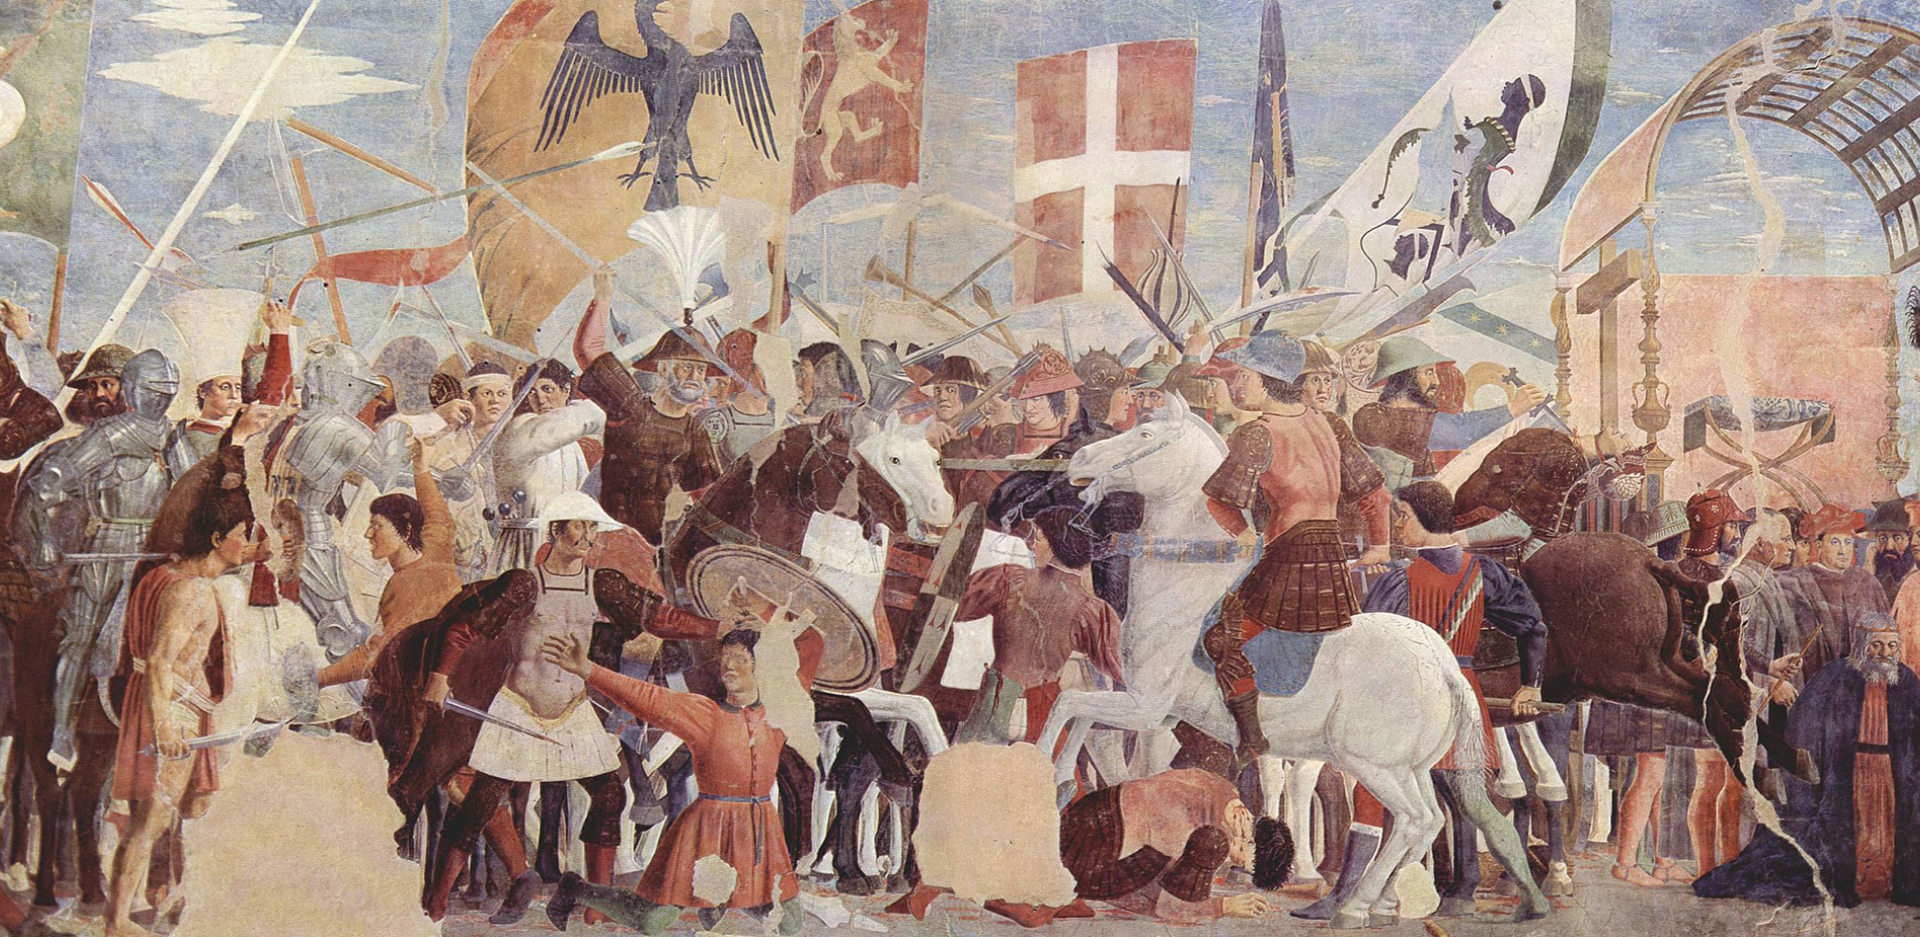 Μάχη μεταξύ του στρατού του Ηρακλείου και των Περσών υπό τον Χοσρόη Β΄. Τοιχογραφία του Piero della Francesca, 1452